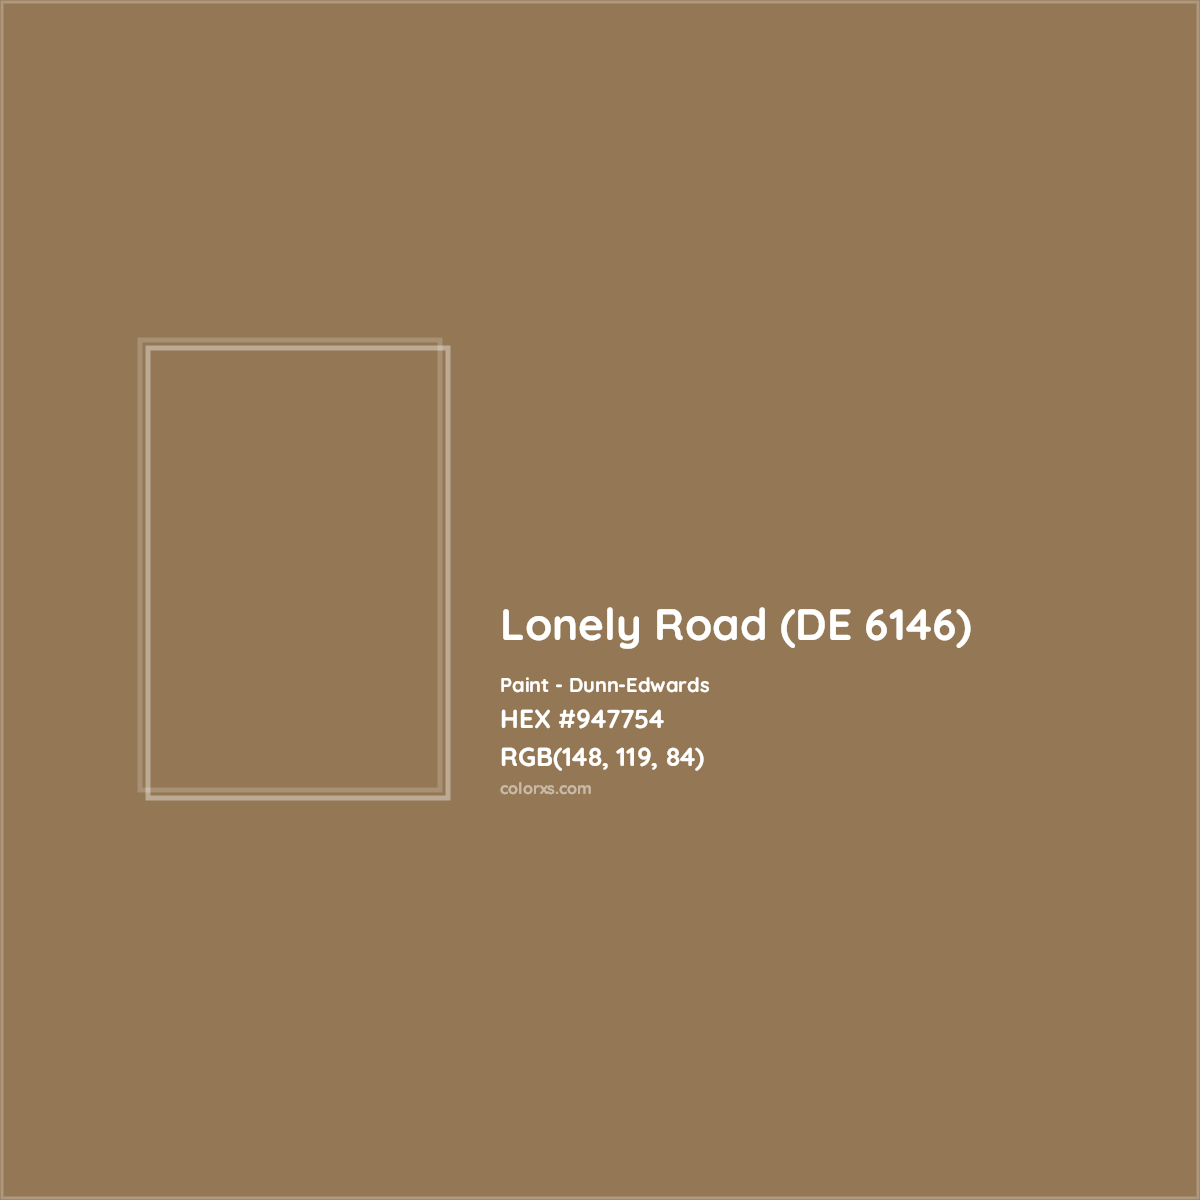 HEX #947754 Lonely Road (DE 6146) Paint Dunn-Edwards - Color Code